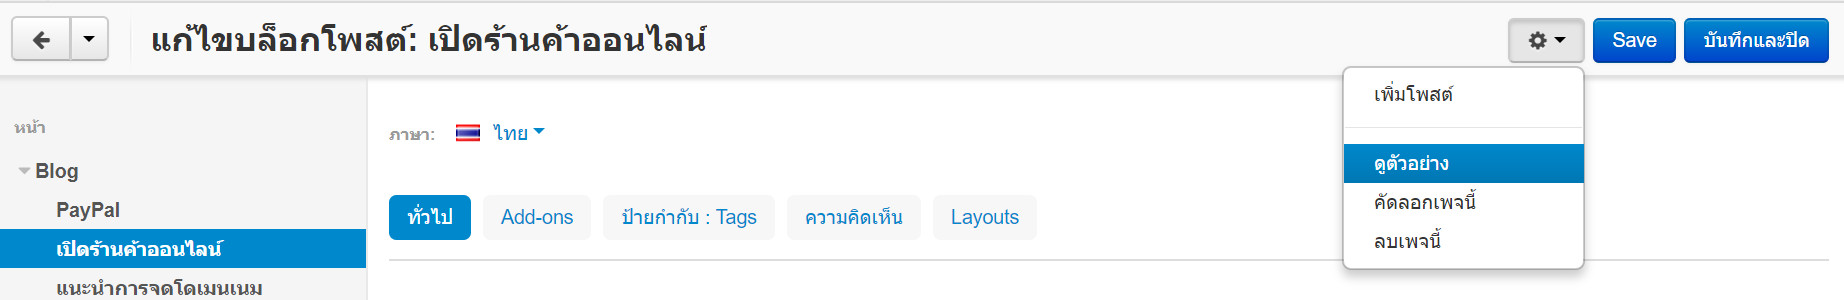 เว็บไซต์สำเร็จรูปไทย - คู่มือร้านออนไลน์ - การจัดการร้านออนไลน์-blog บล็อก เรียกดูตัวอย่างโพสต์